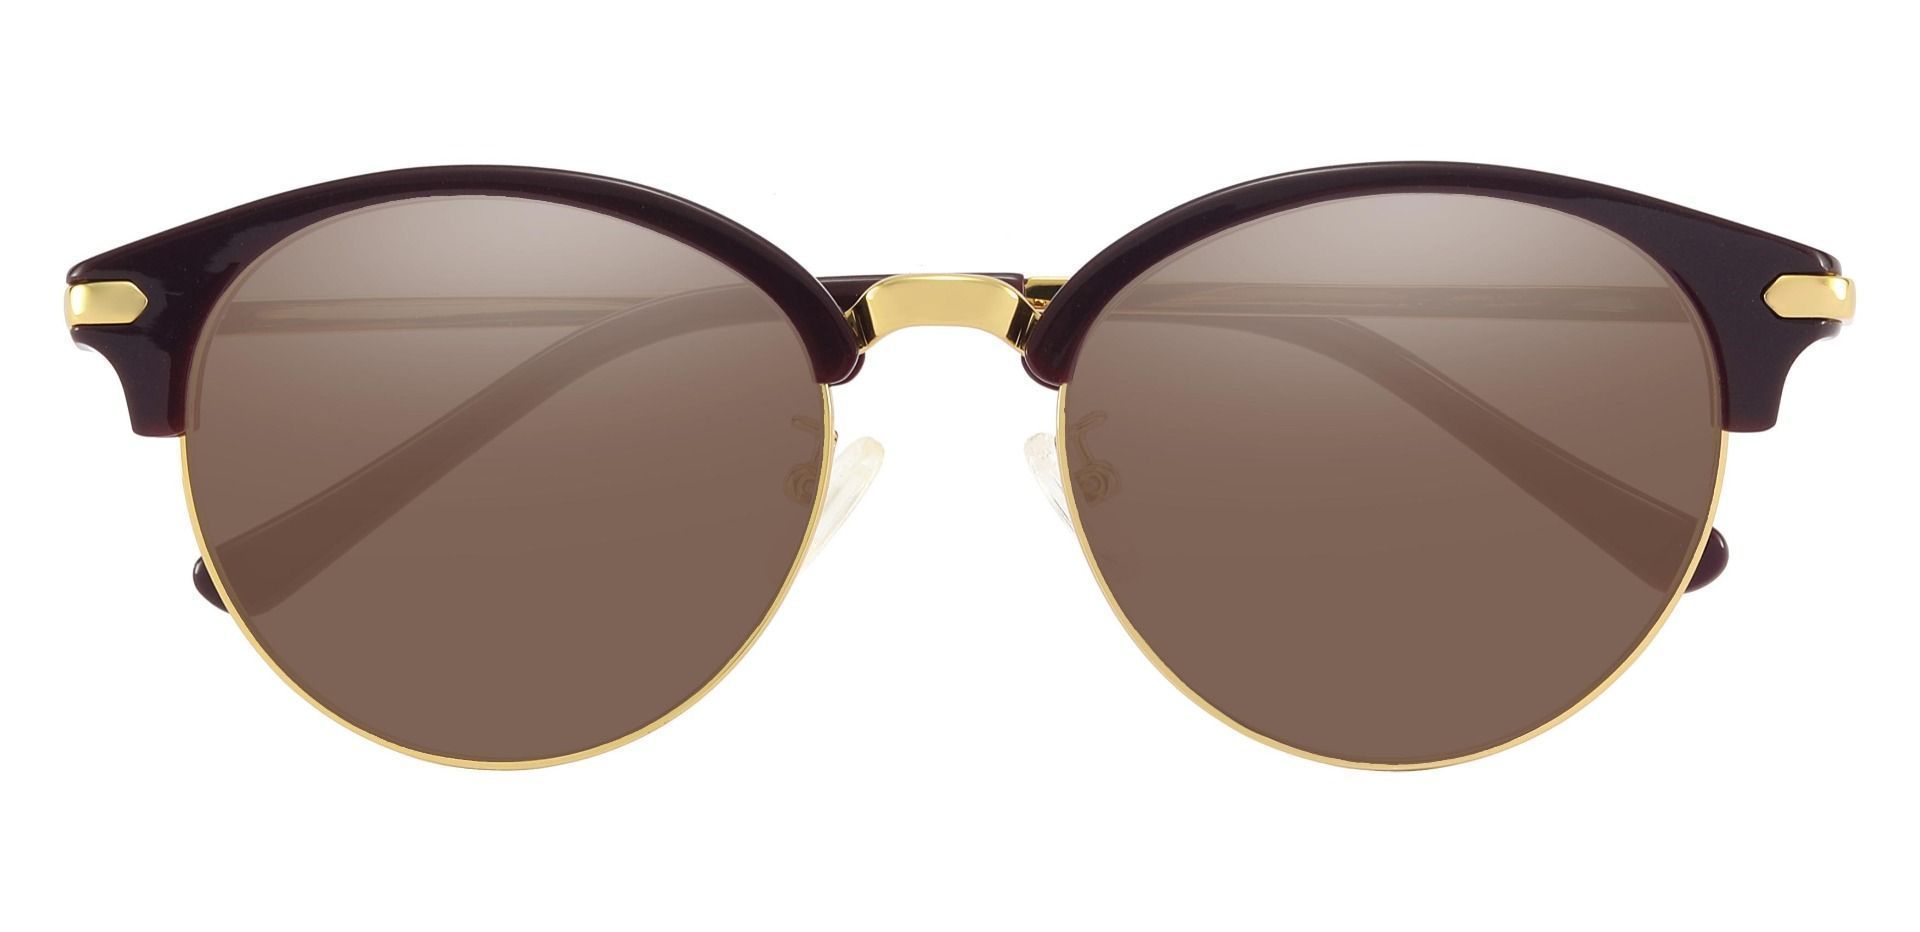 Catskill Browline Prescription Sunglasses - Purple Frame With Brown Lenses